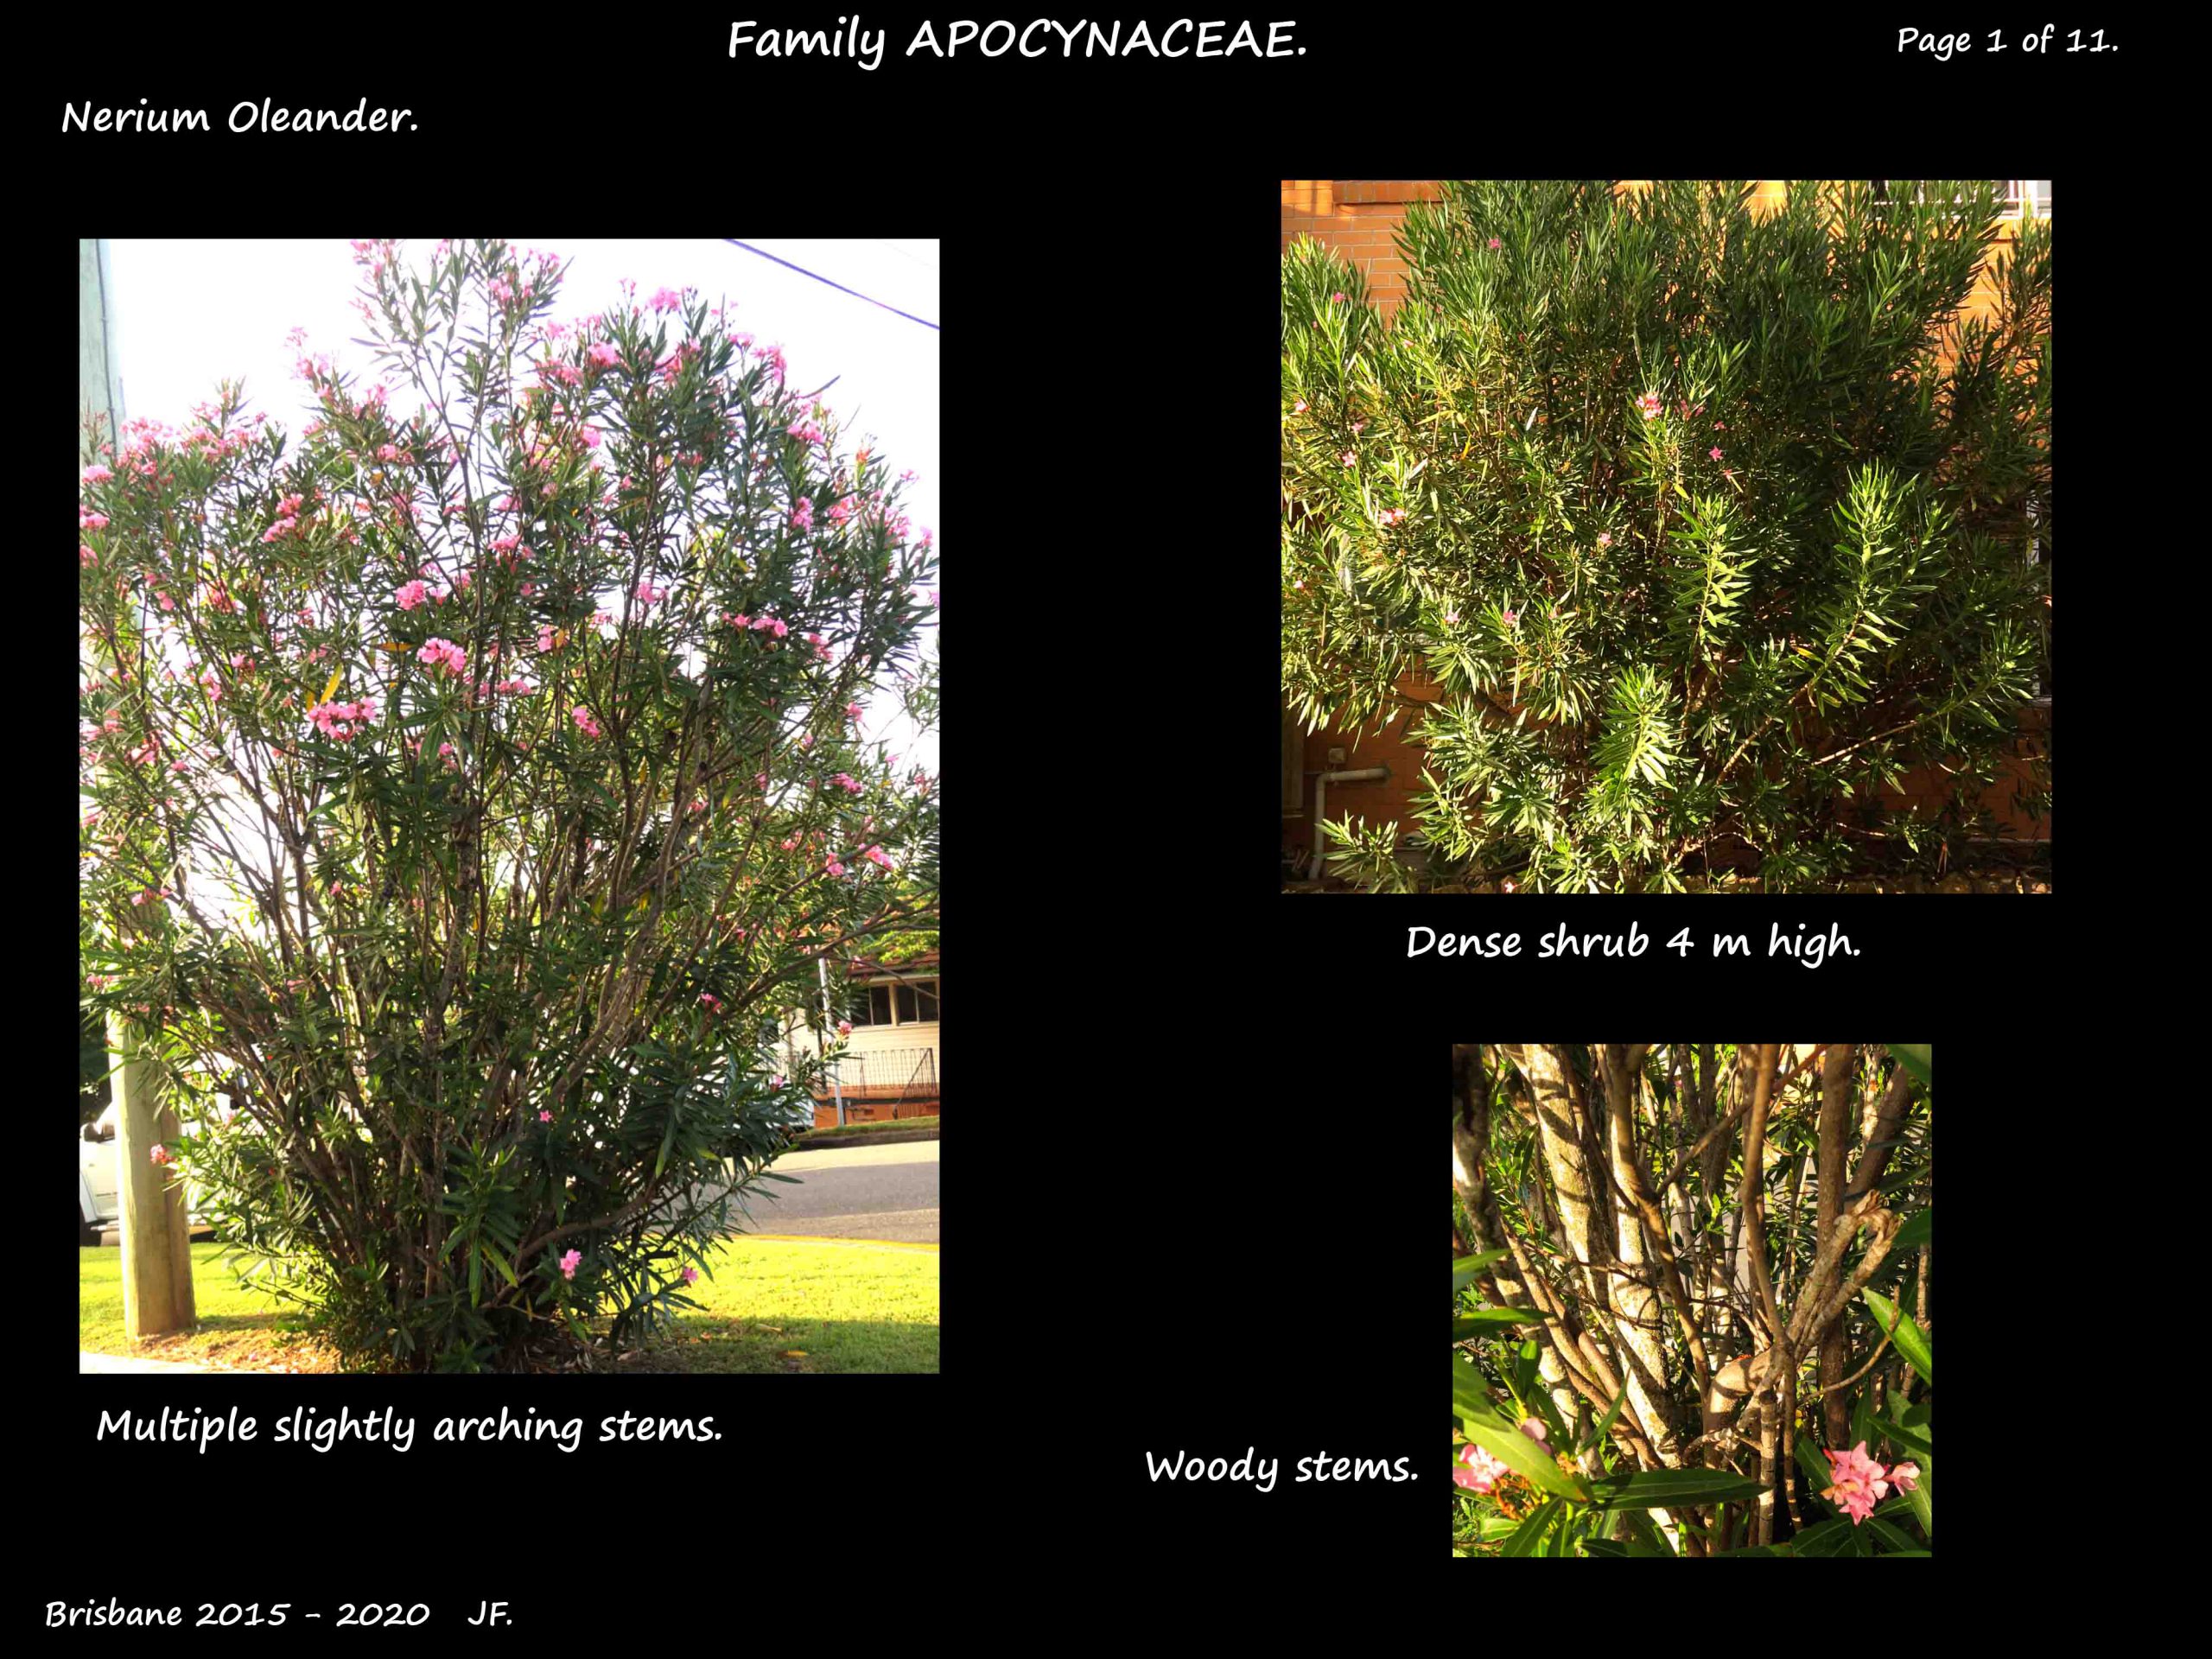 1 Nerium oleander shrubs